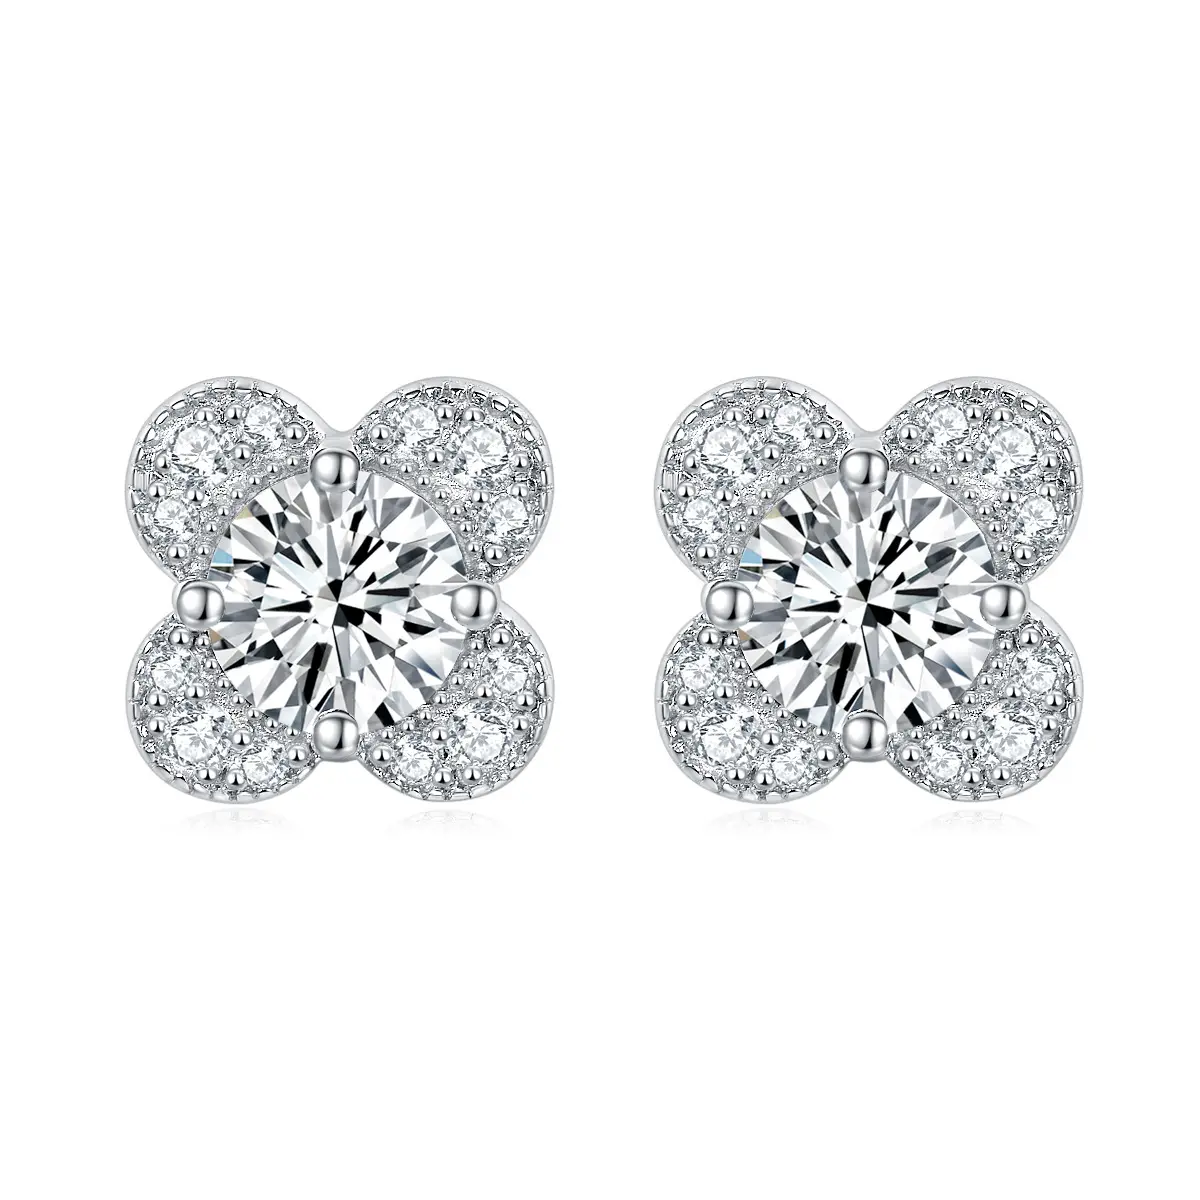 Wholesale Hot Selling Fashion Women's 925 Sterling Silver Stud Earrings Clover Earrings Zircon Luxury Ladies Stud Earrings